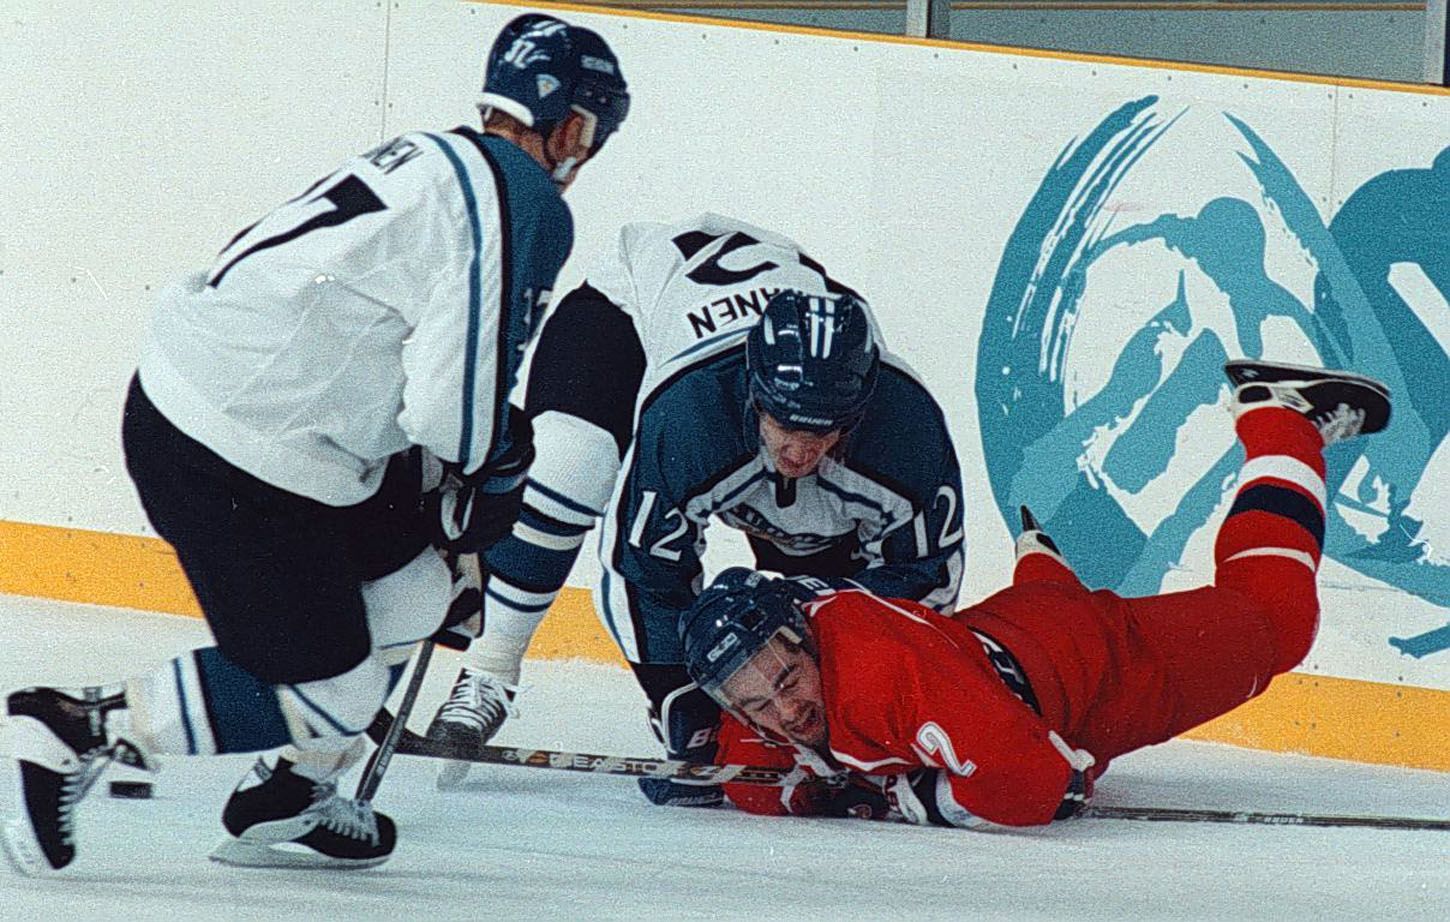 Archivní snímky z ZOH Nagano 1998 - hokej. David Moravec